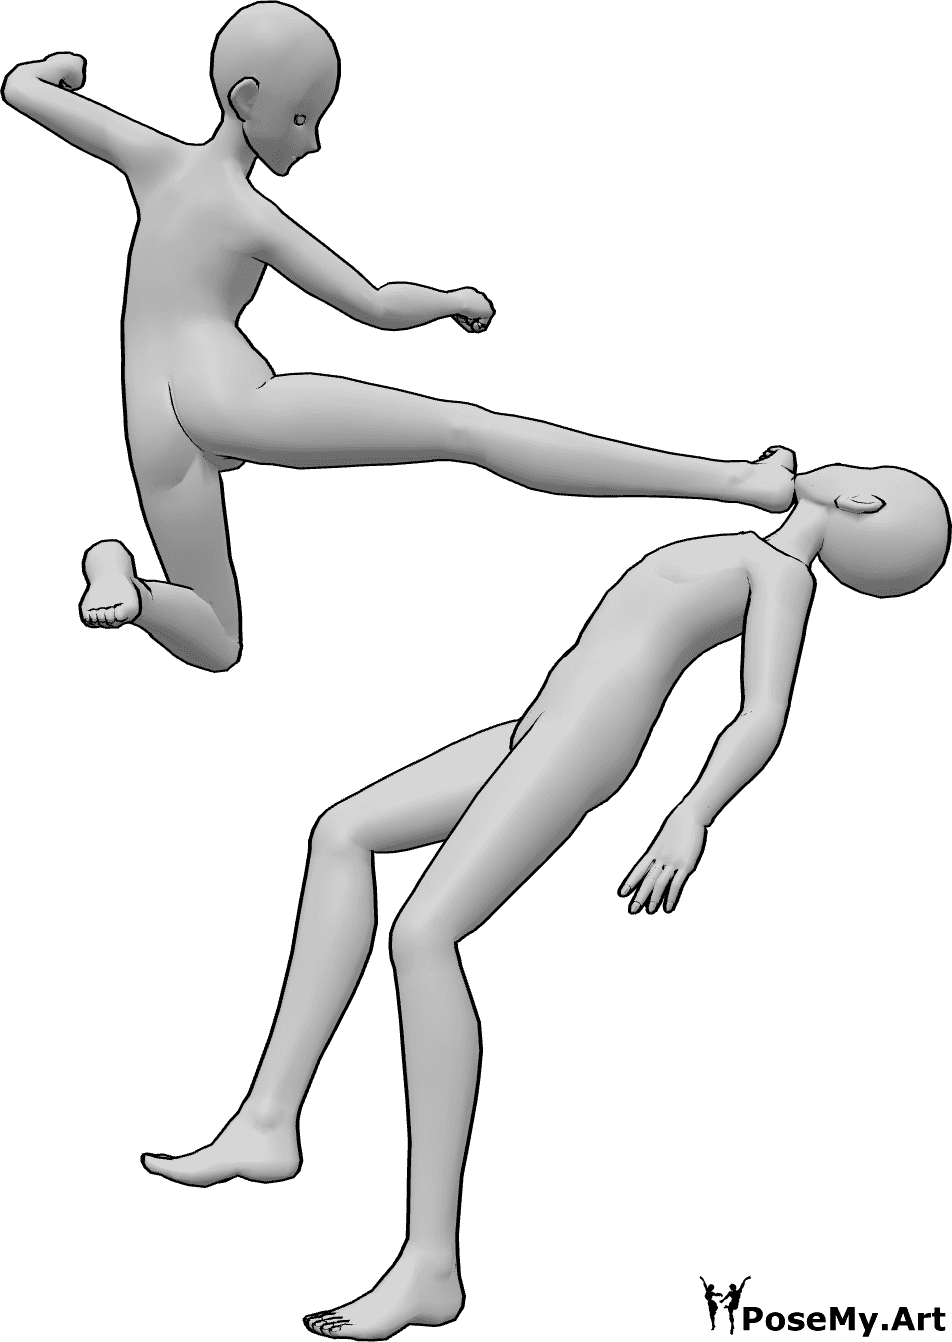 Referencia de poses- Postura de ataque con patada en la cabeza - El macho anime está atacando al otro macho, dándole patadas en la cabeza